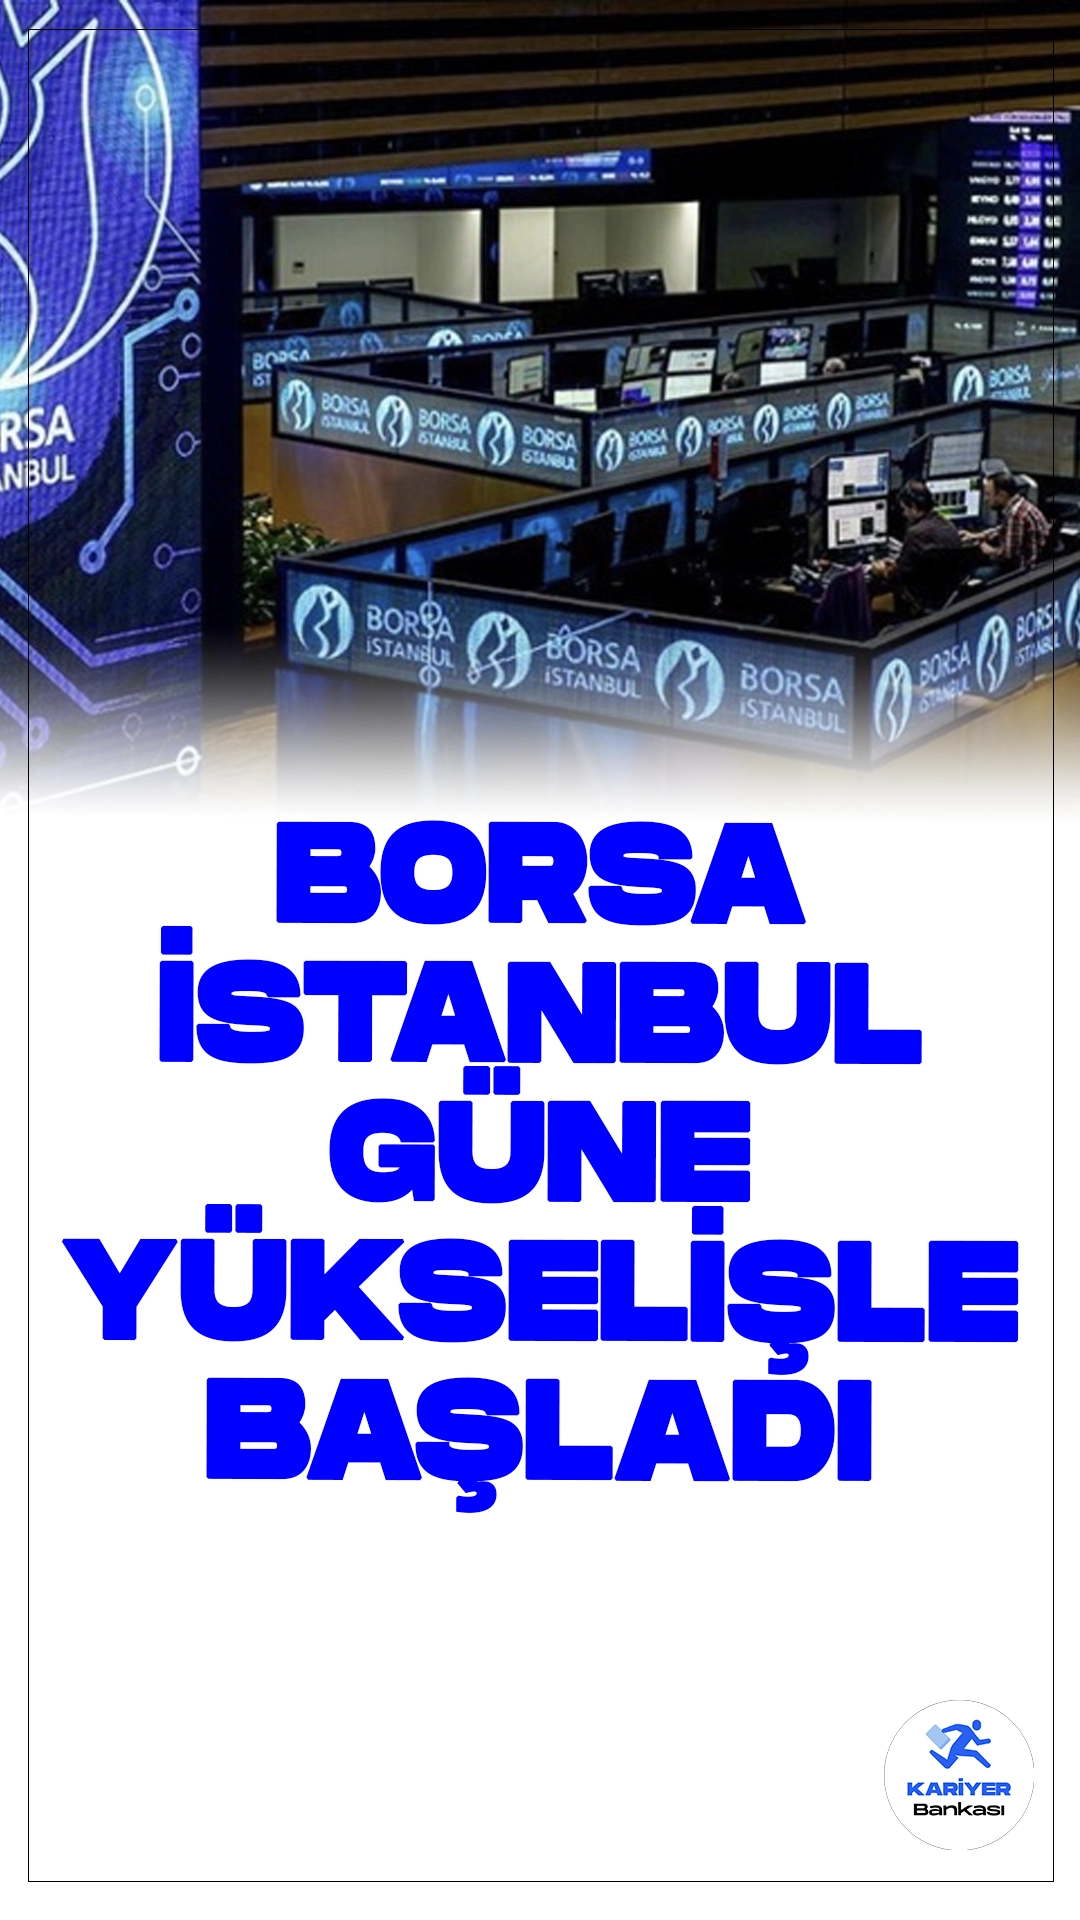 Borsa Haftaya Yükselişle Başladı.Borsa İstanbul'da BIST 100 endeksi, haftaya yüzde 0,41 yükselişle 11.109,68 puandan başladı. Bu artış, piyasada olumlu bir hava yarattı.